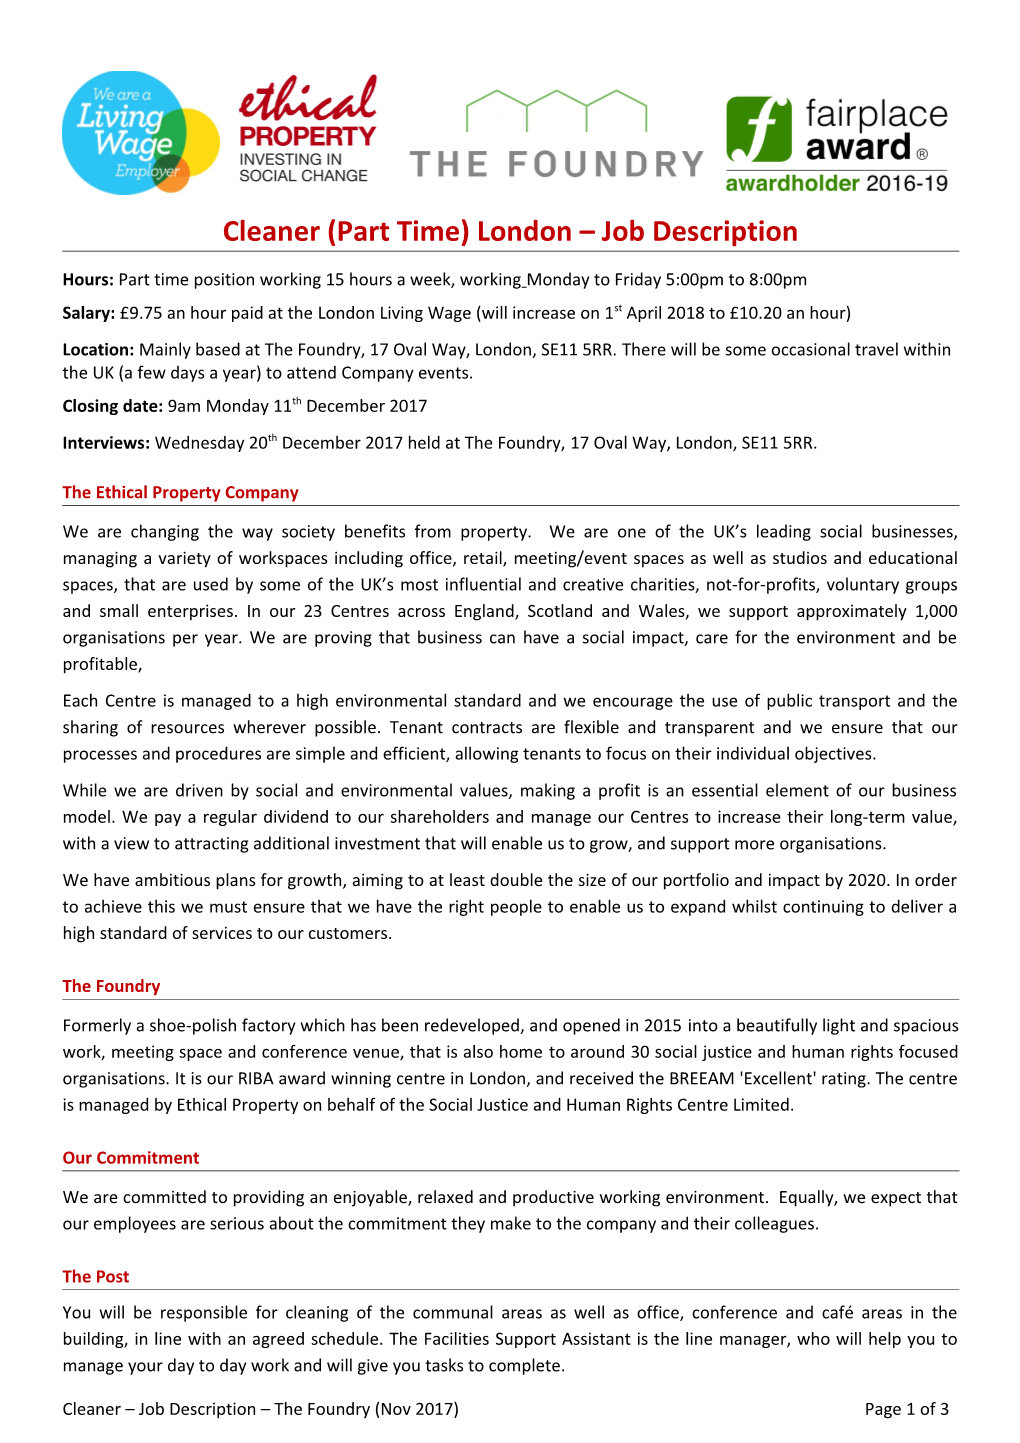 Cleaner(Part Time) London Job Description